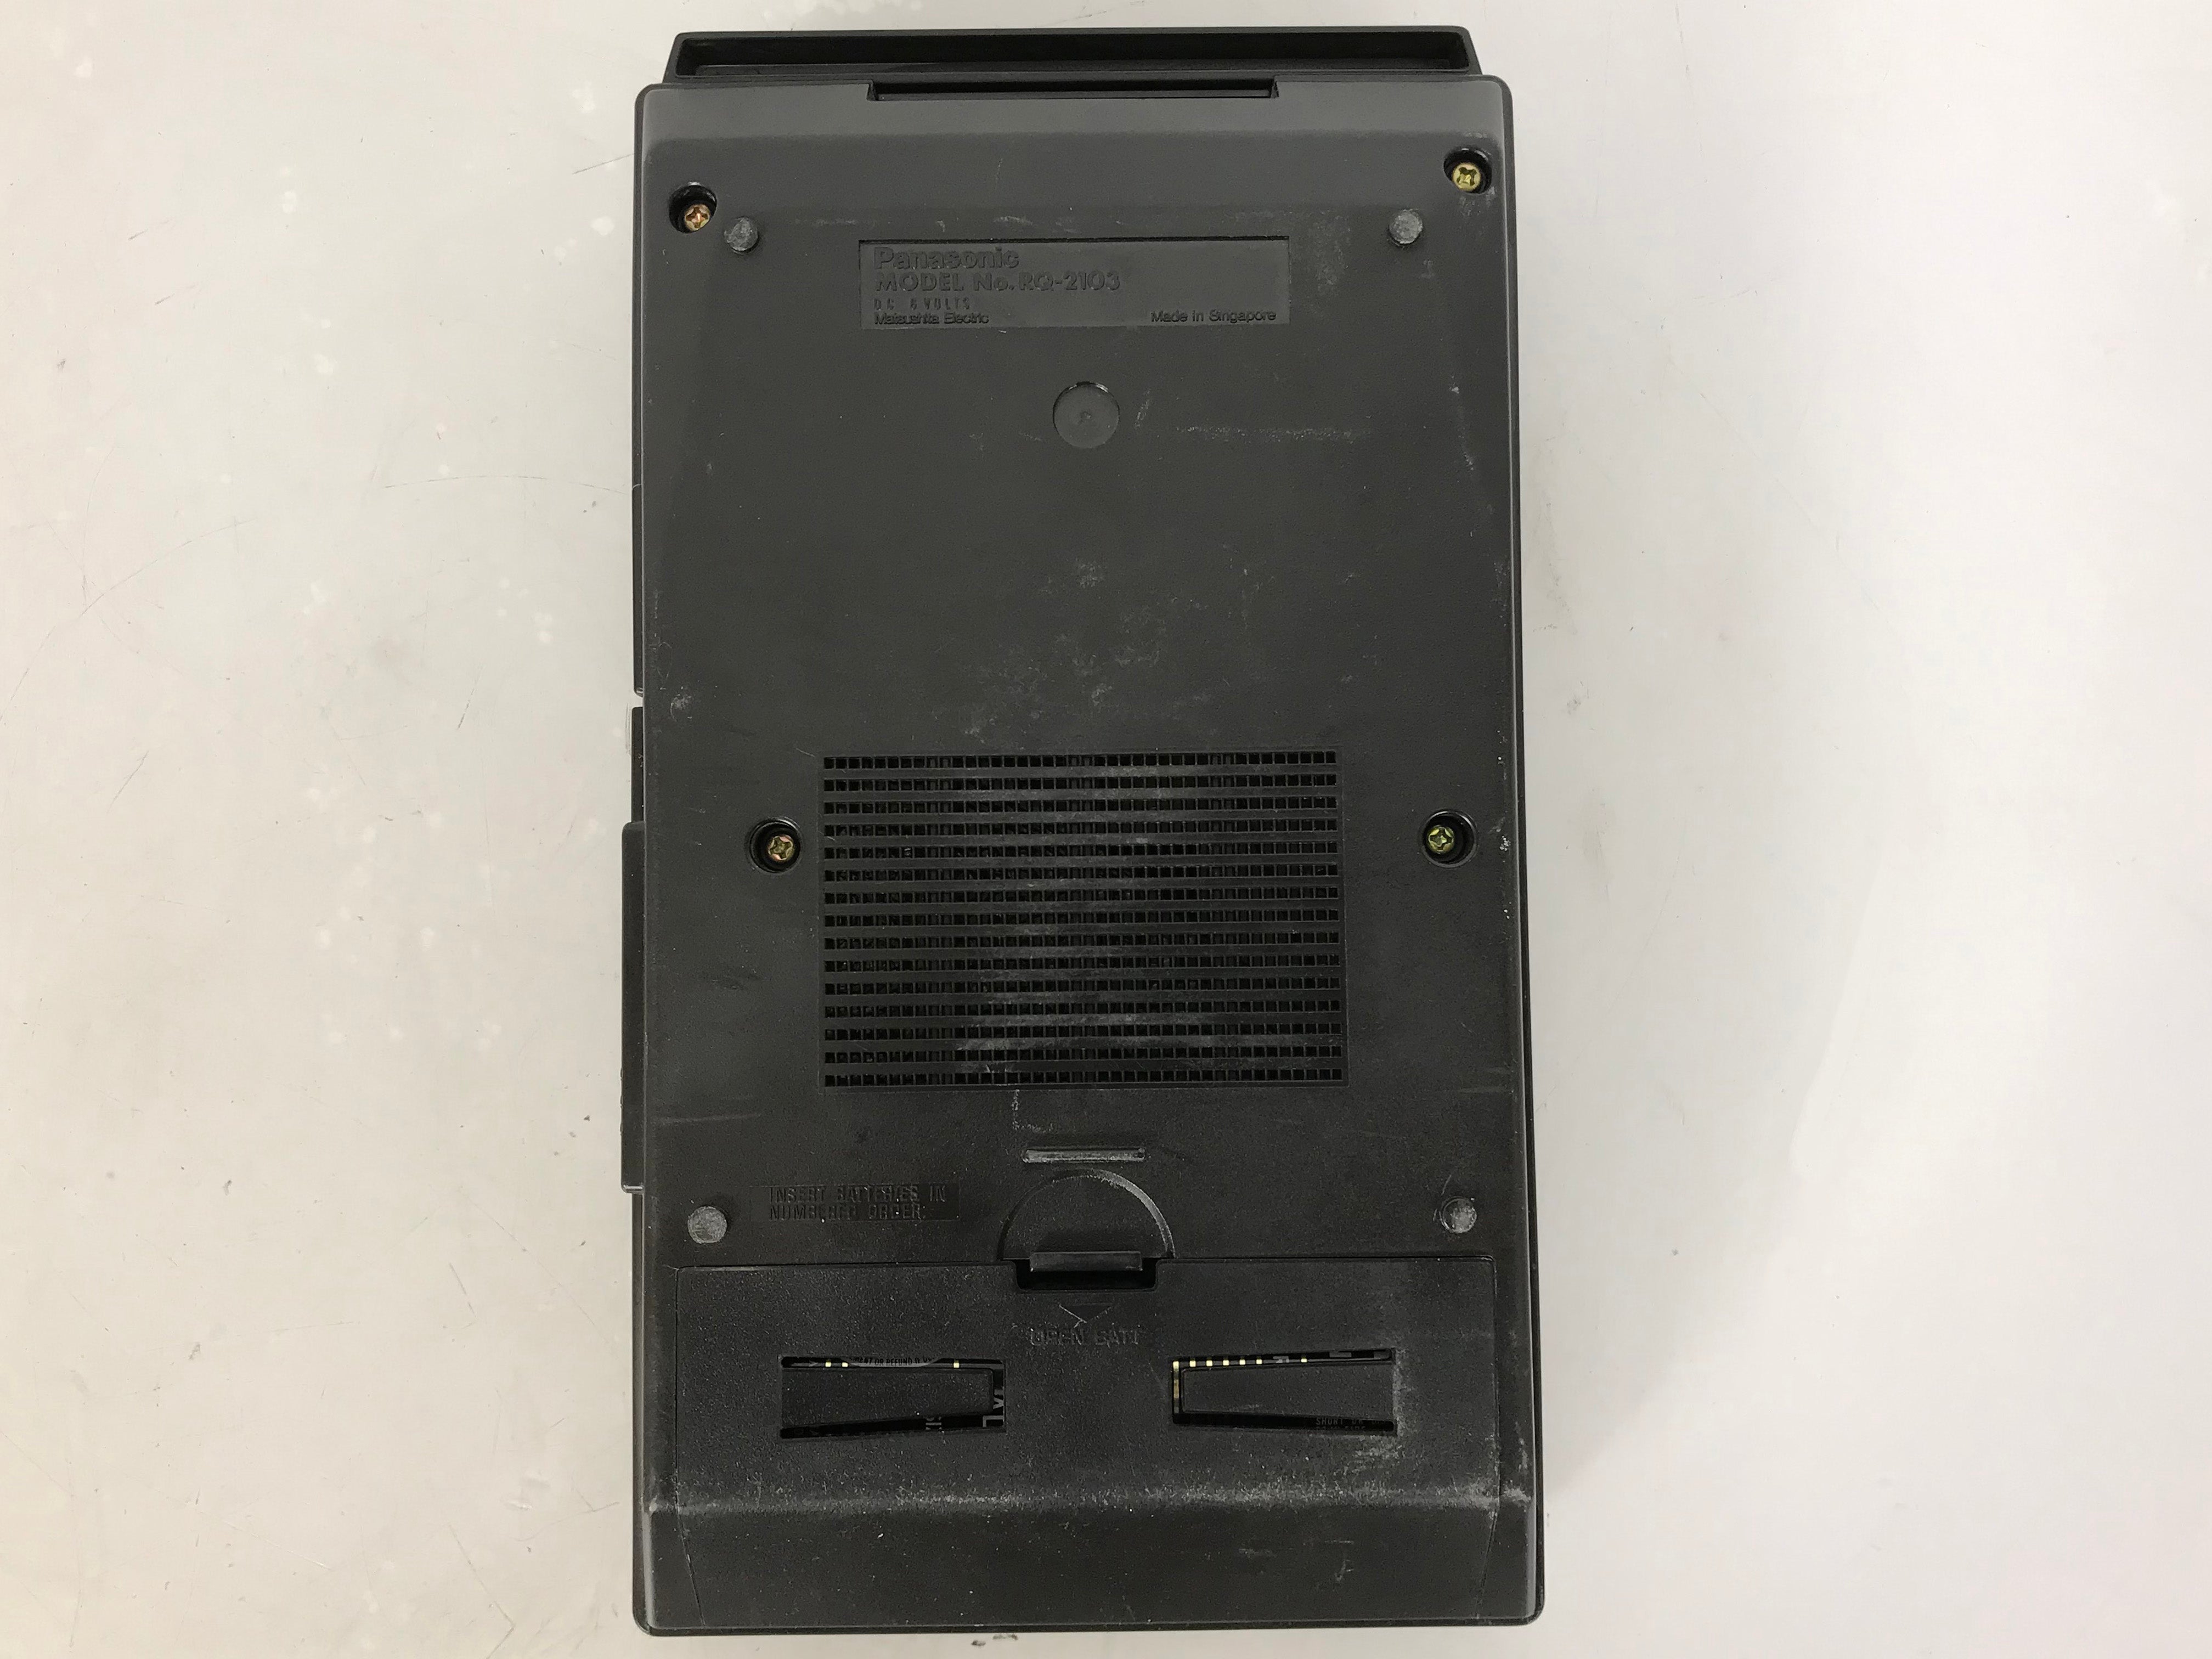 Panasonic RQ-2103 SlimLine Portable Cassette Recorder